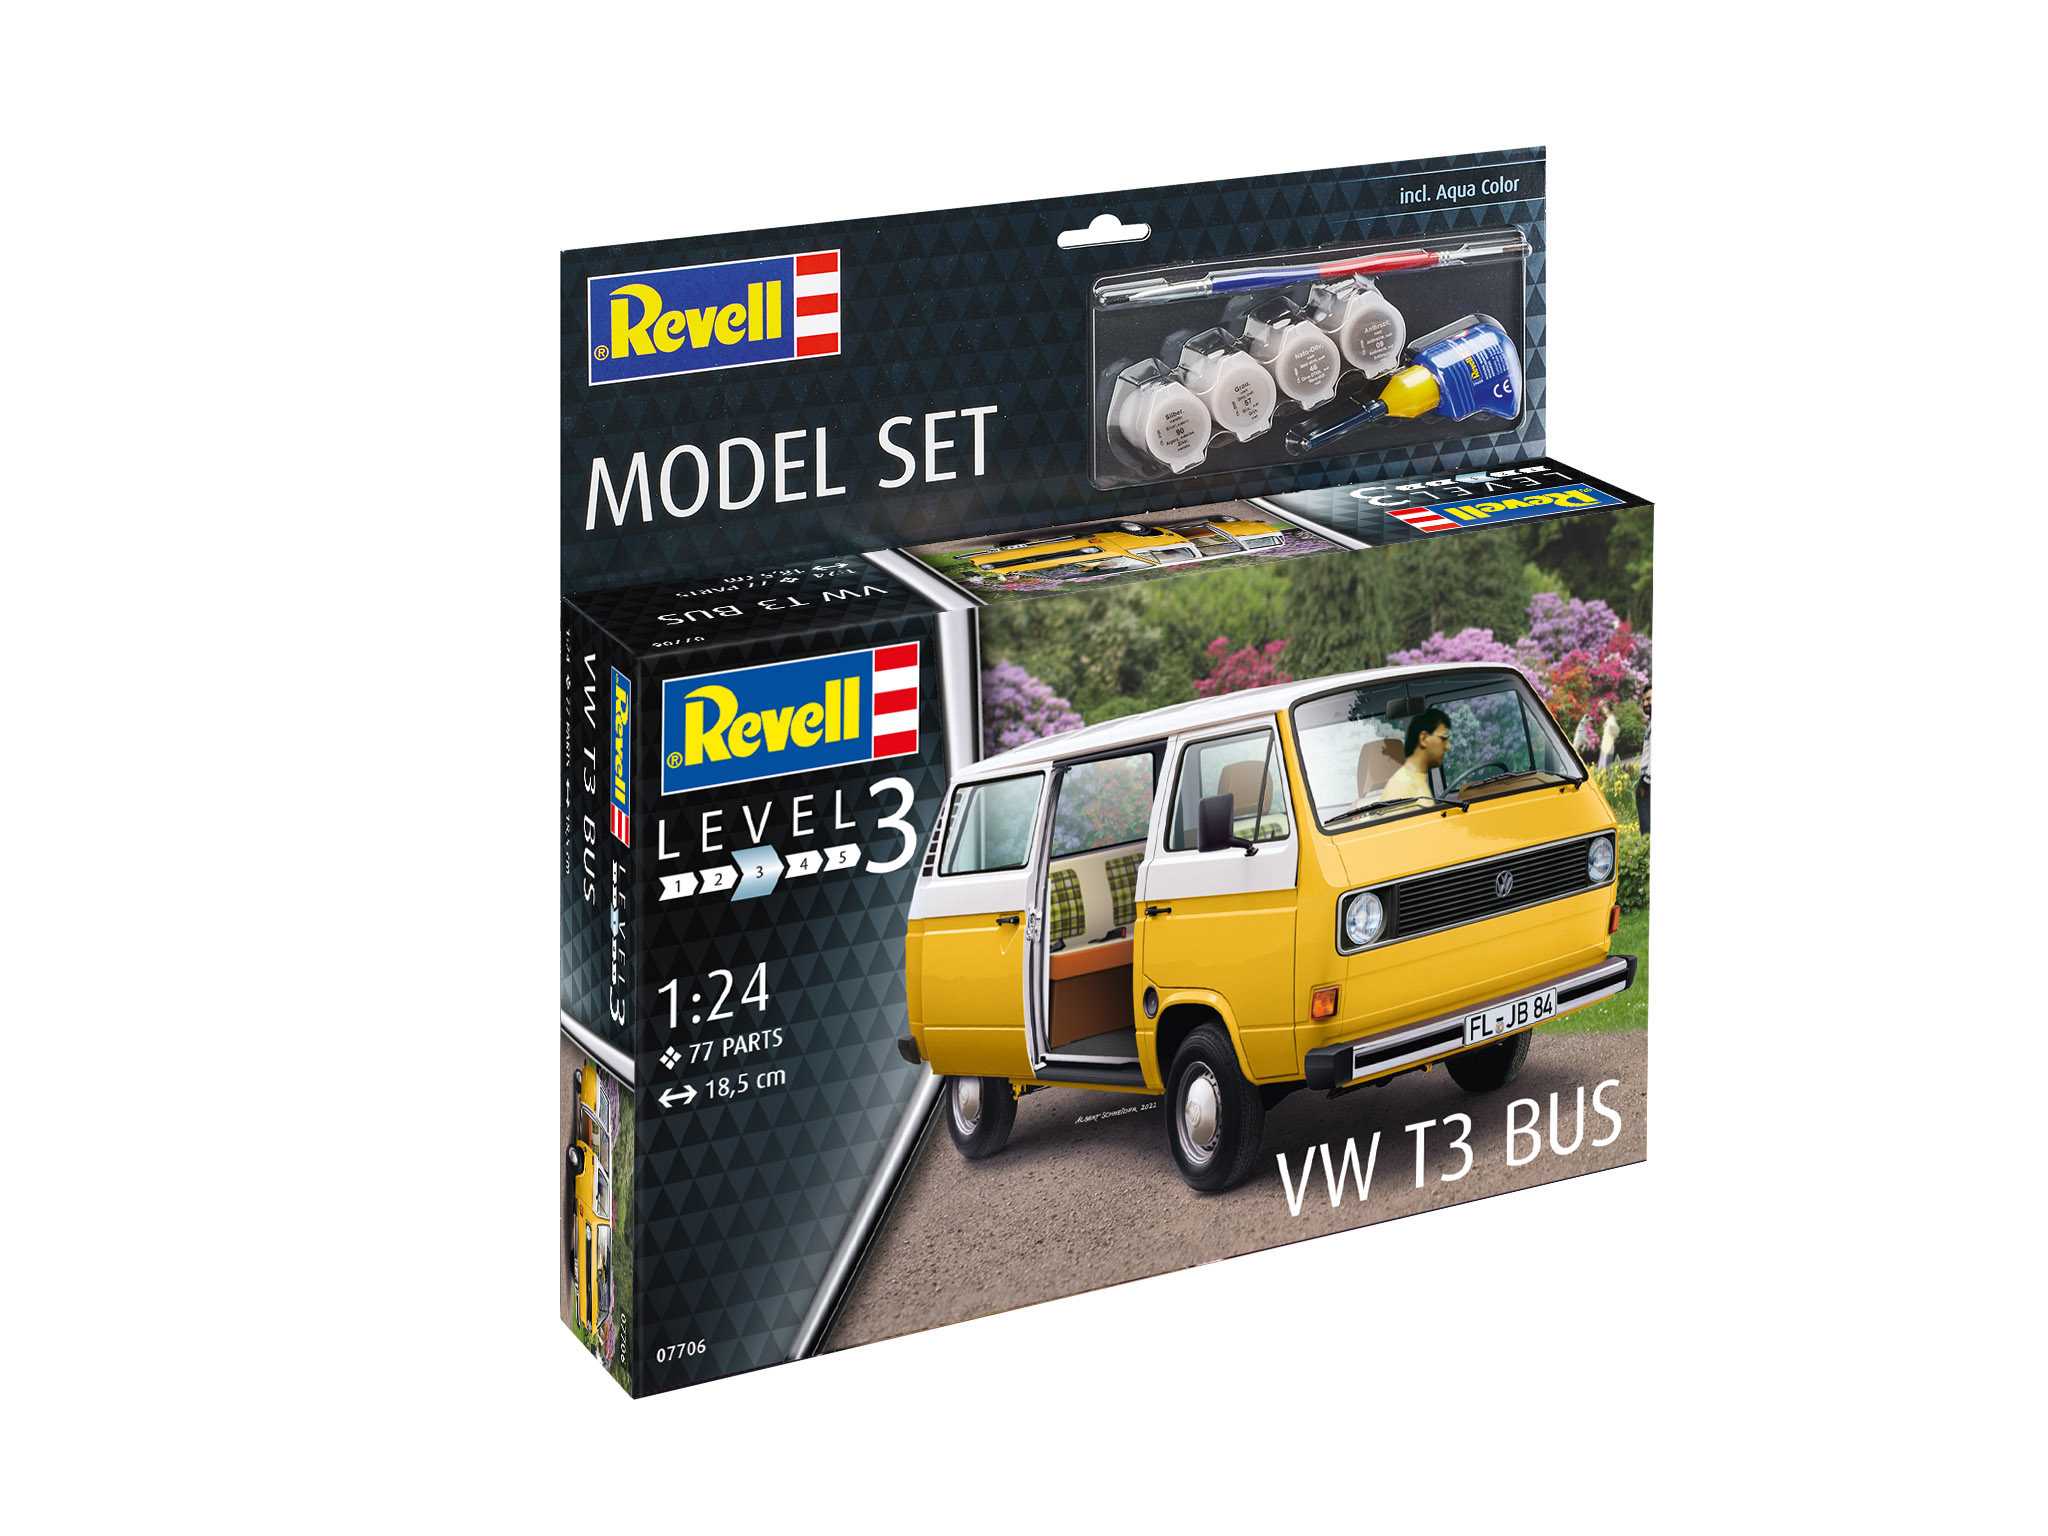 Revell ModelSet auto 67706 - VW T3 Bus (1:25)